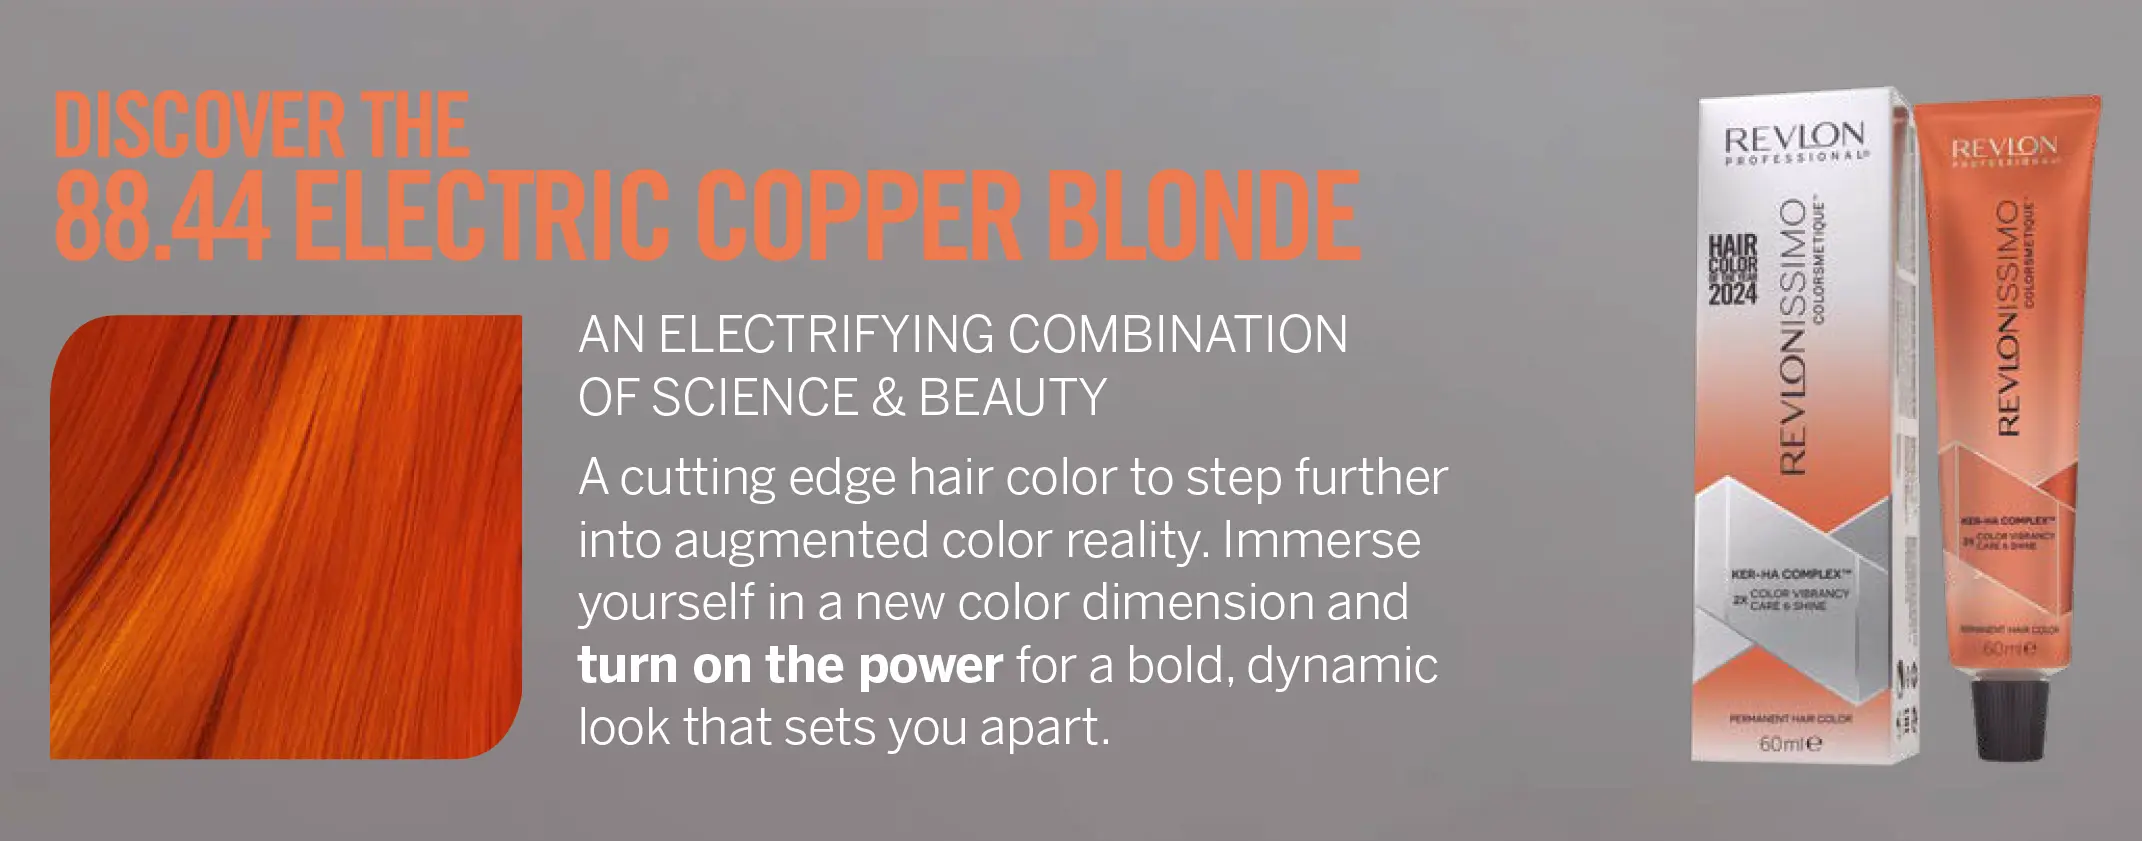 Electric Copper Blonde 